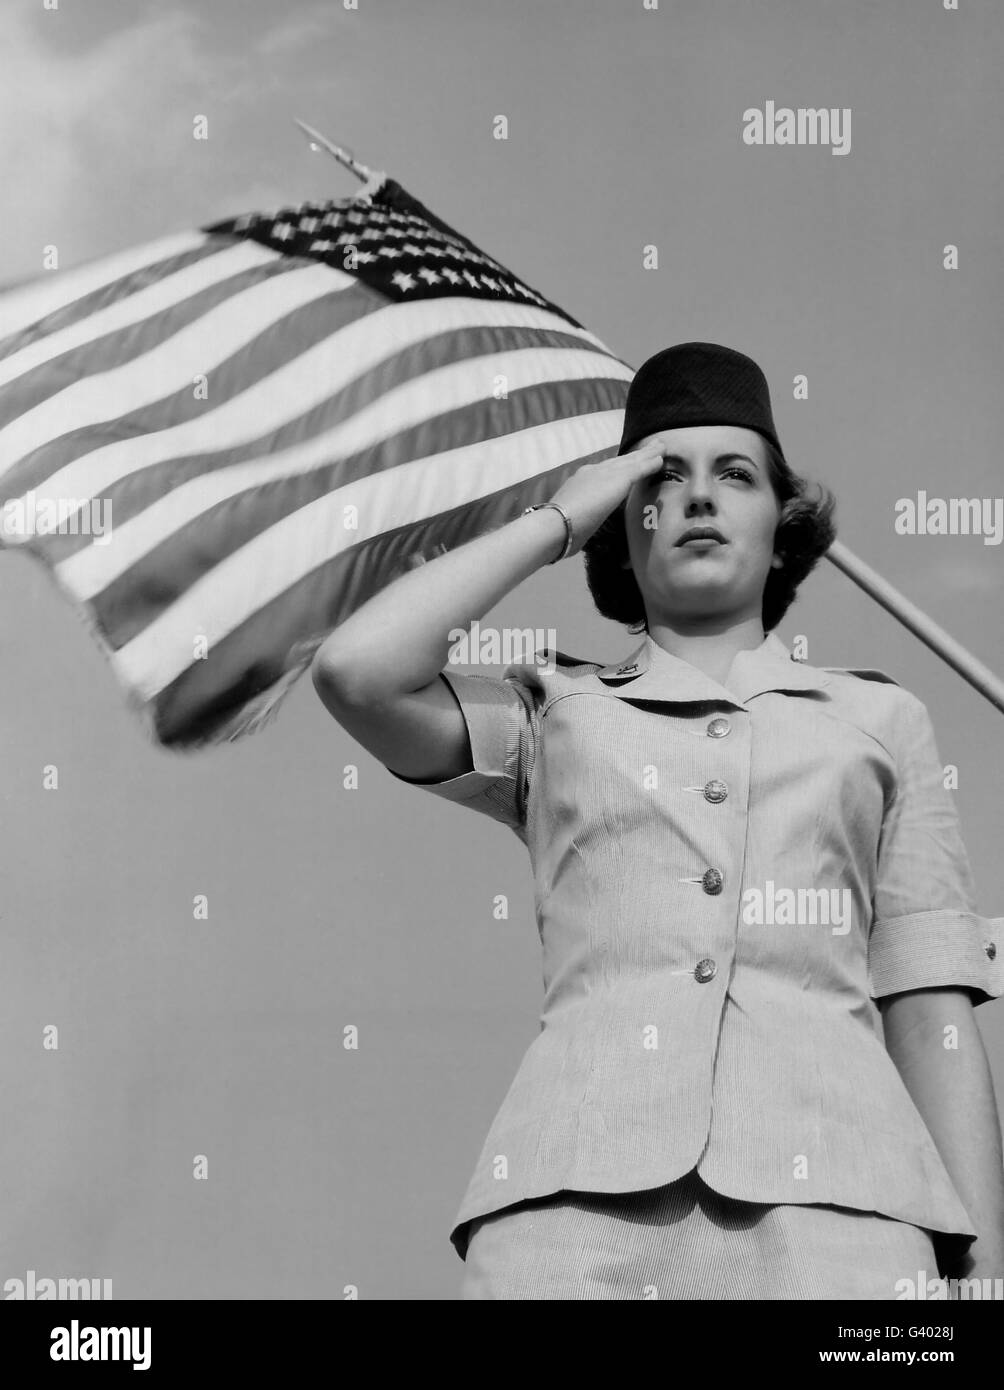 Una mujer en el oficial de la Fuerza Aérea de los gestos, un saludo. Foto de stock